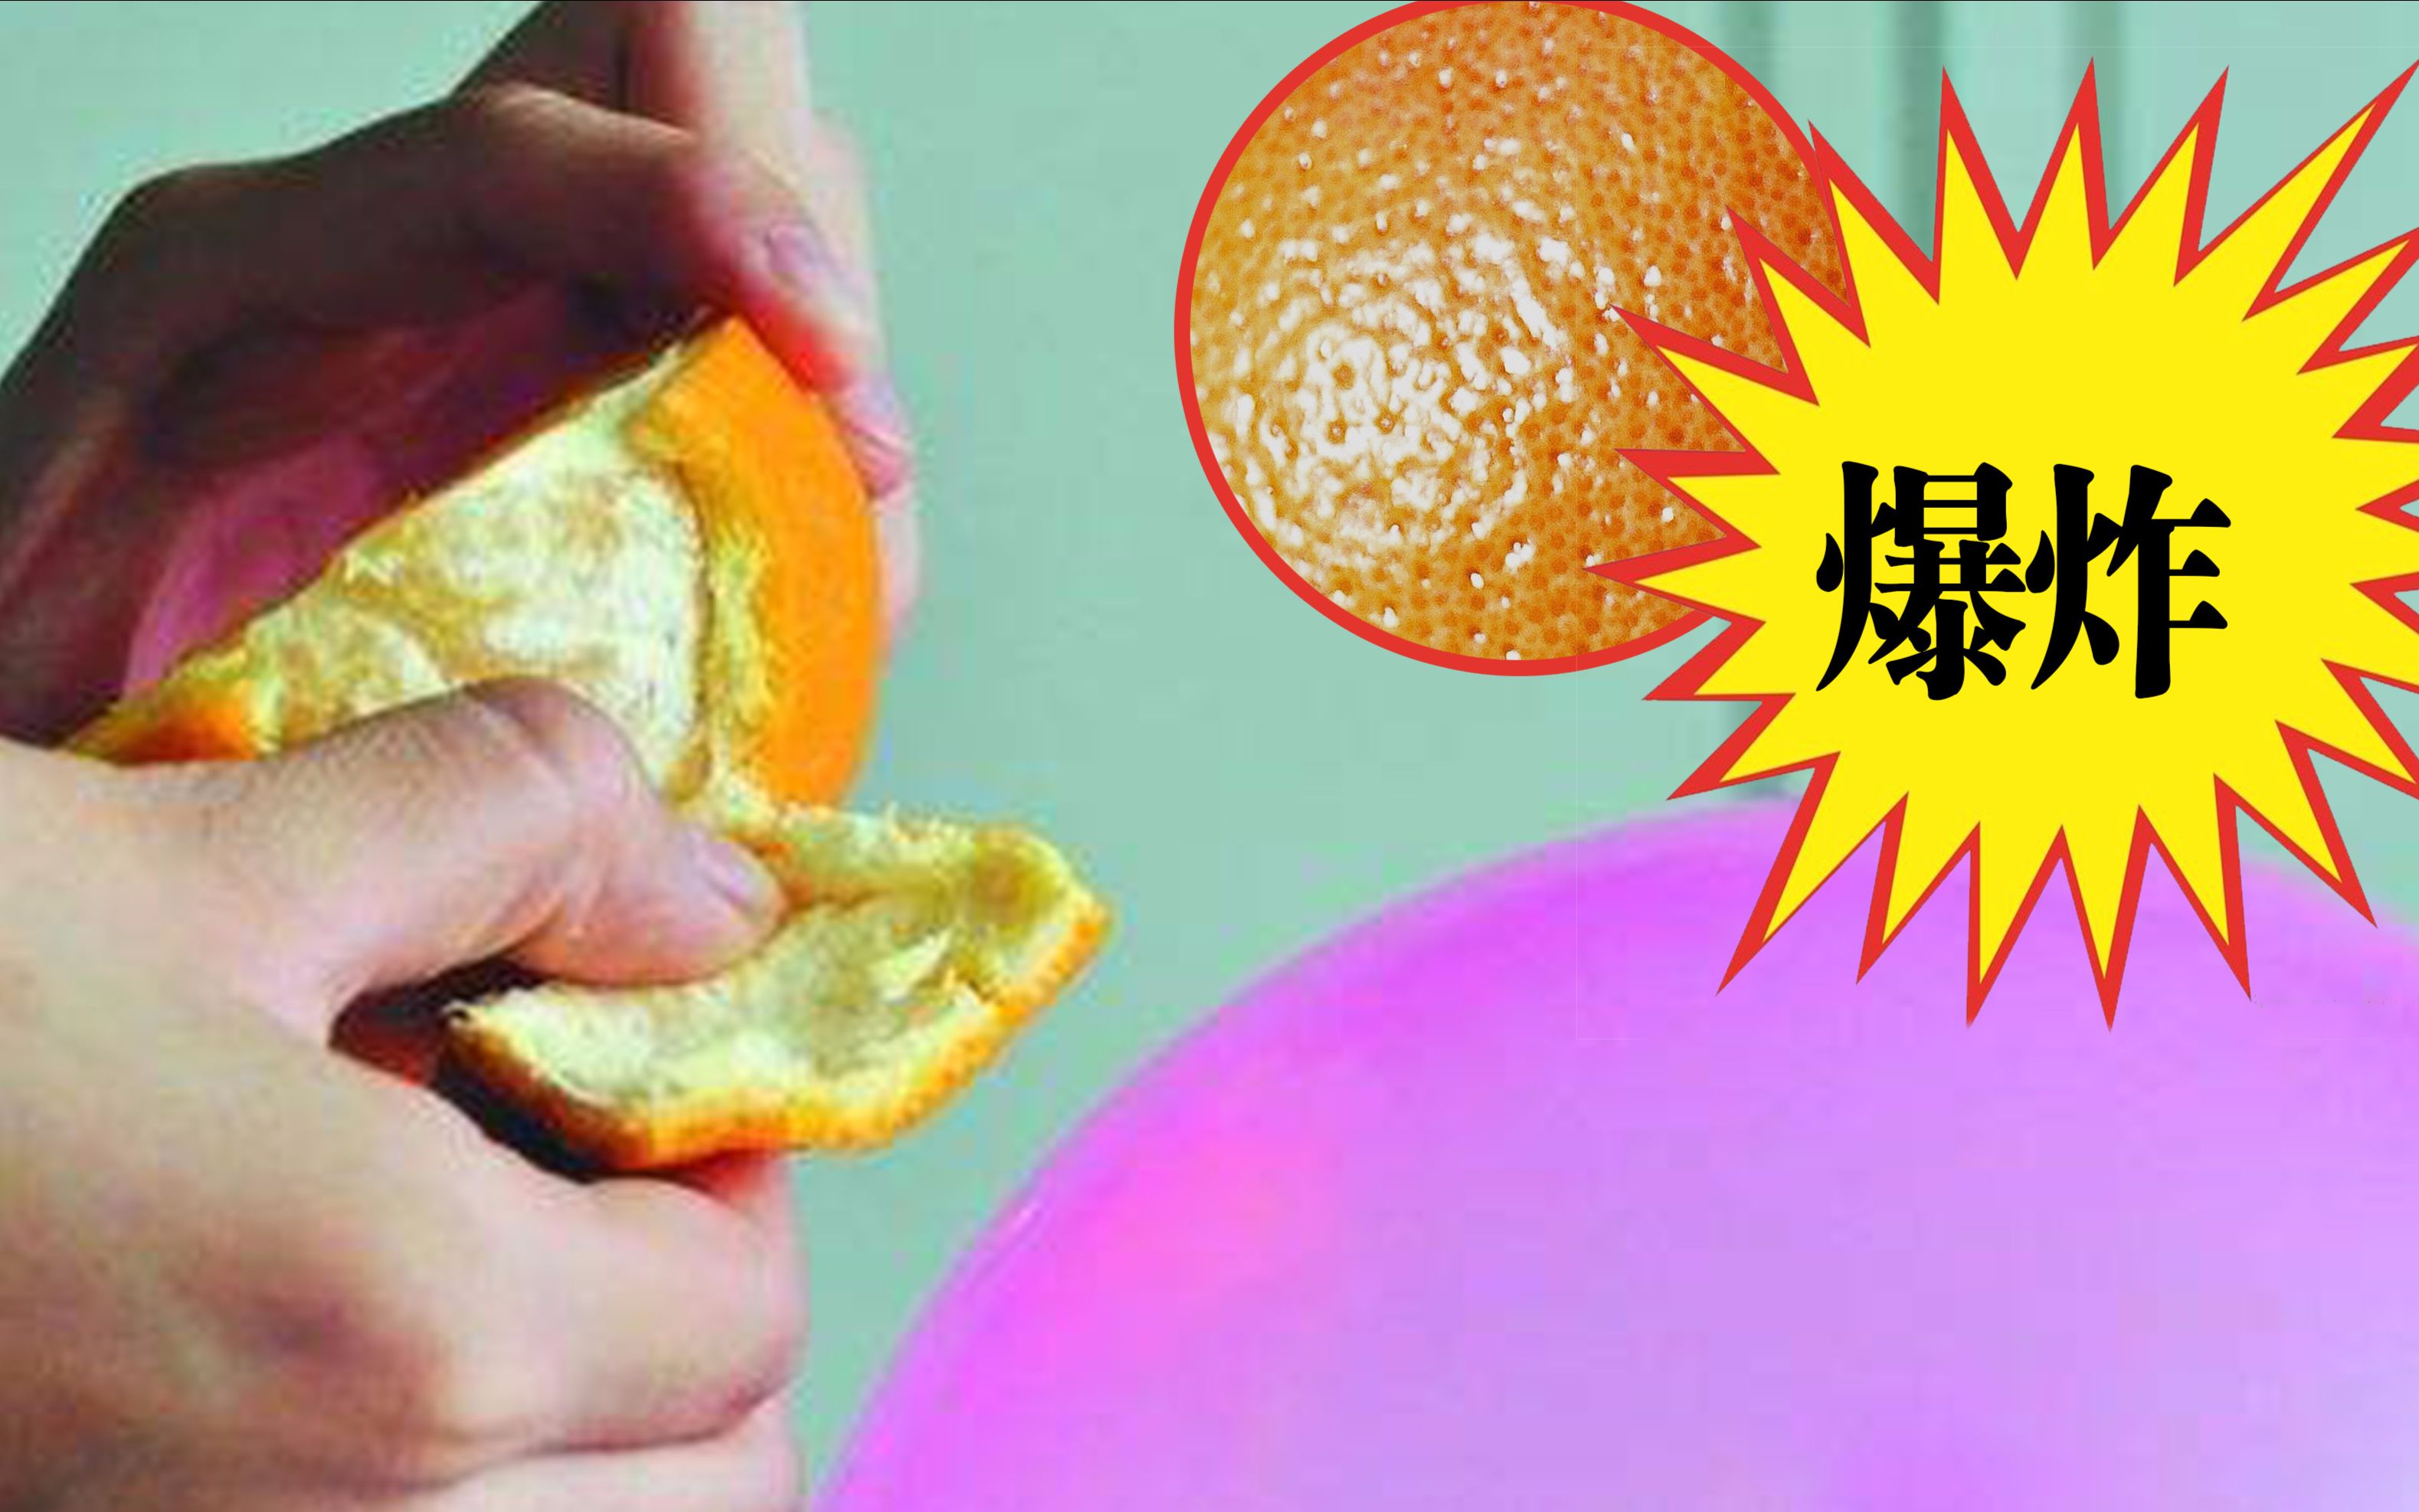 我买的橘子没想到遇到XX就爆炸了！难道橘子皮里含有危险物质吗